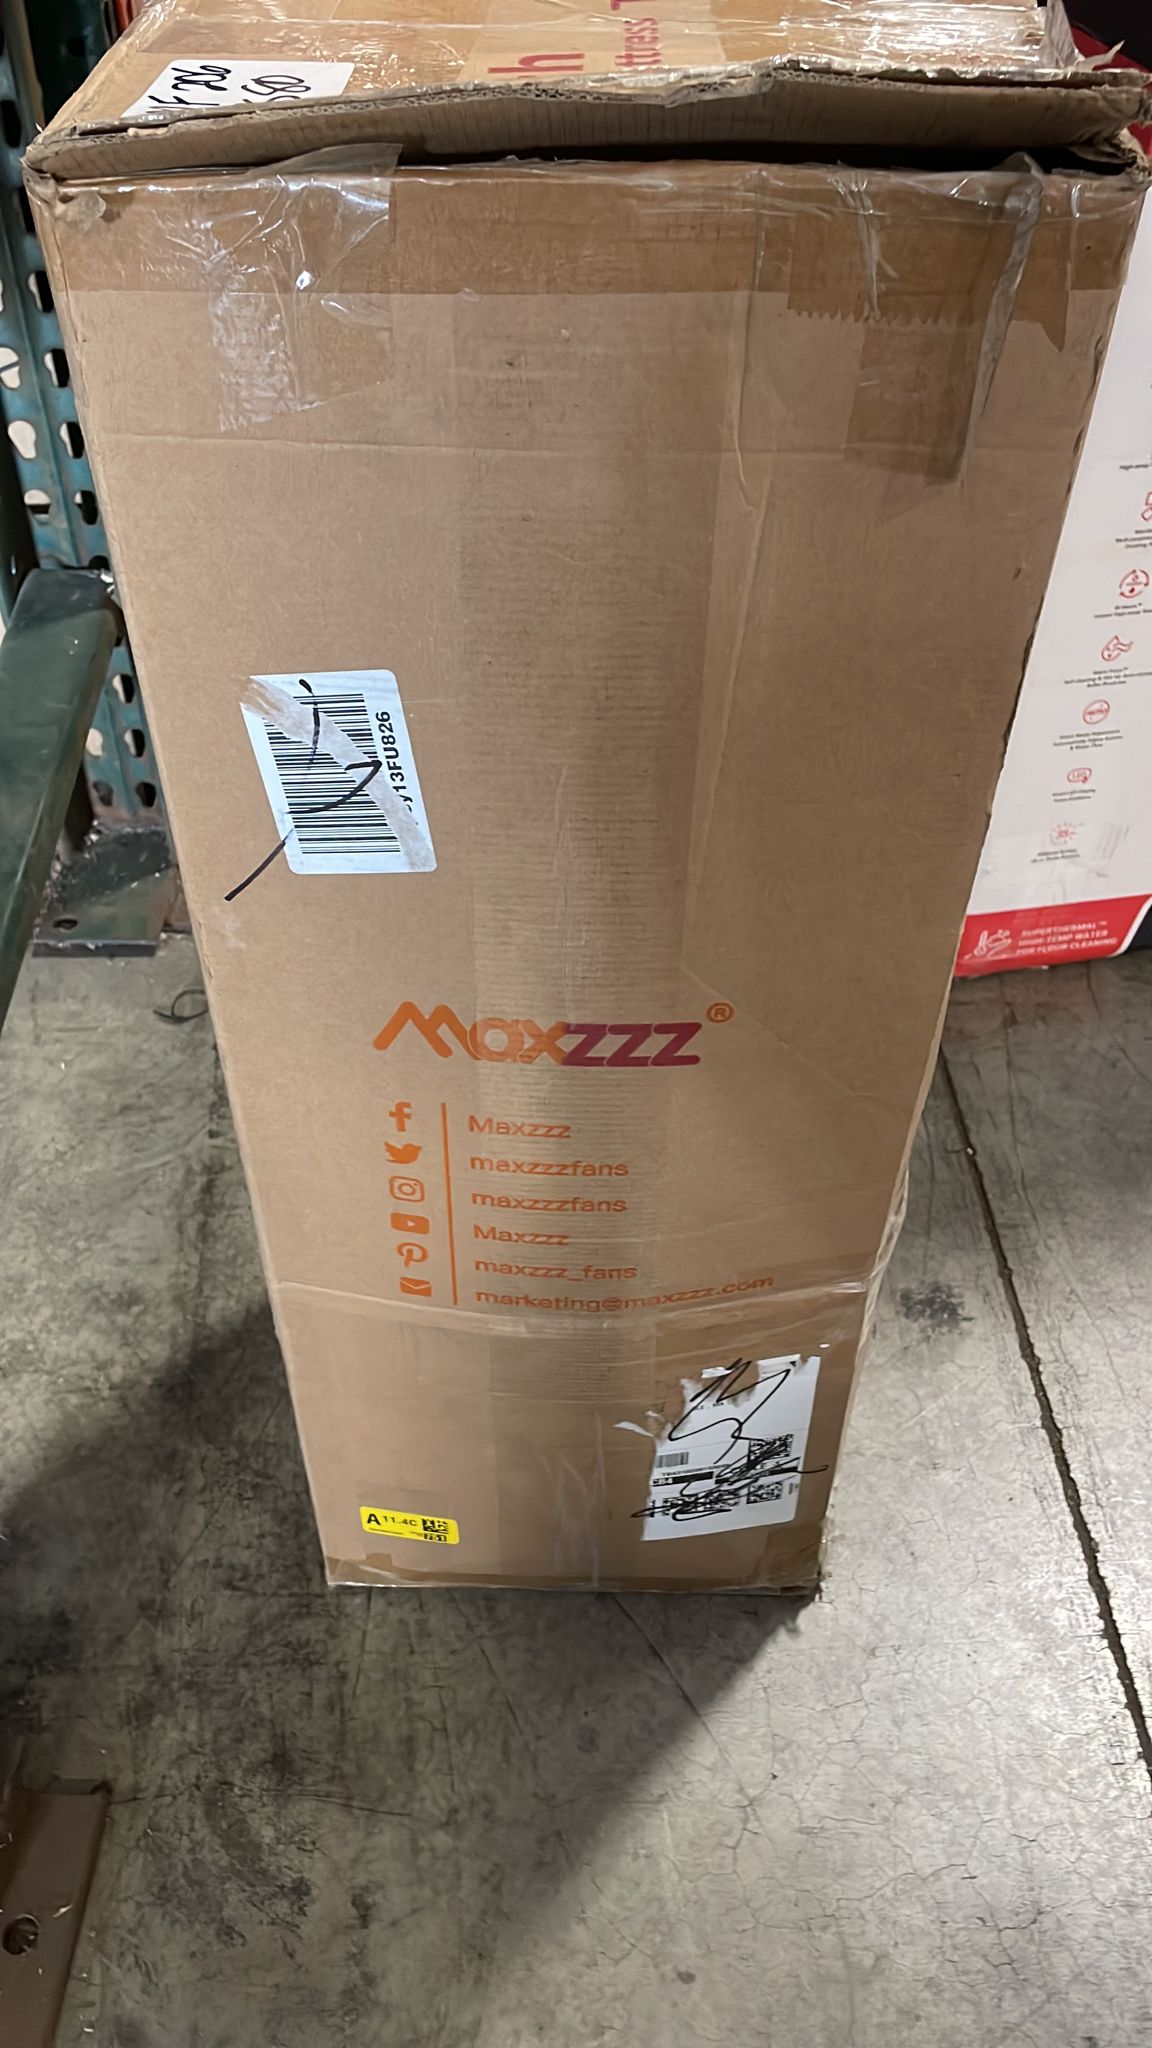 Maxzzz 4 Inch Full Memory Foam Mattress Topper, Gel Infused Foam Bed Toppers - $80